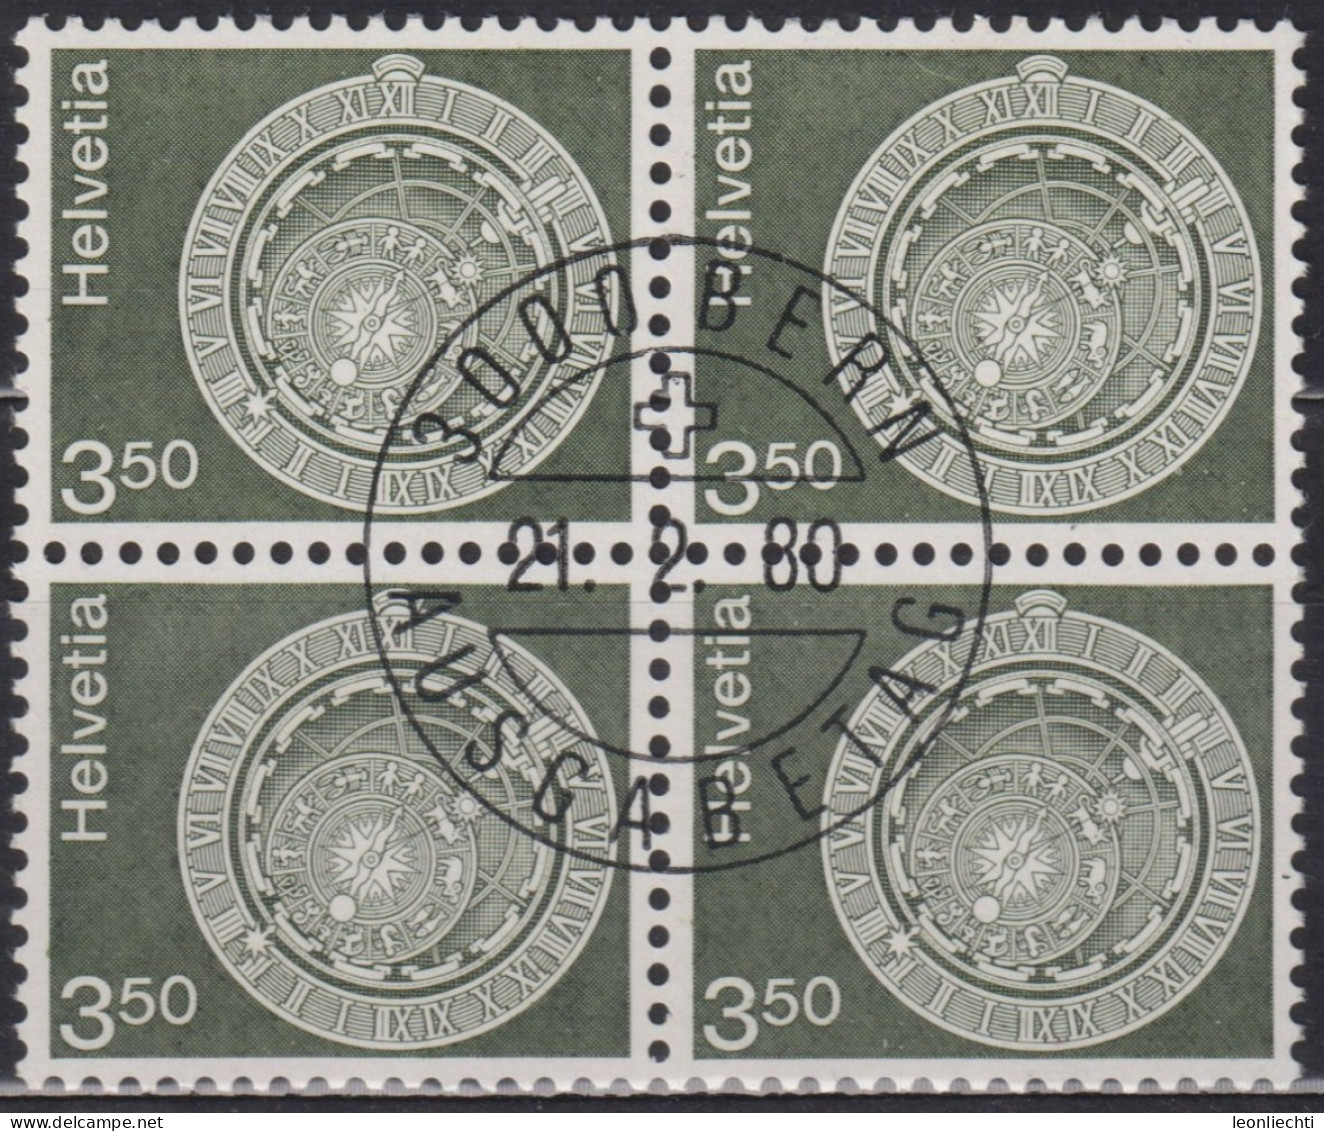 1980 Schweiz ET ° Zum: CH 613, MI: CH 1169, Astronomische Uhr, Bern, - Horlogerie